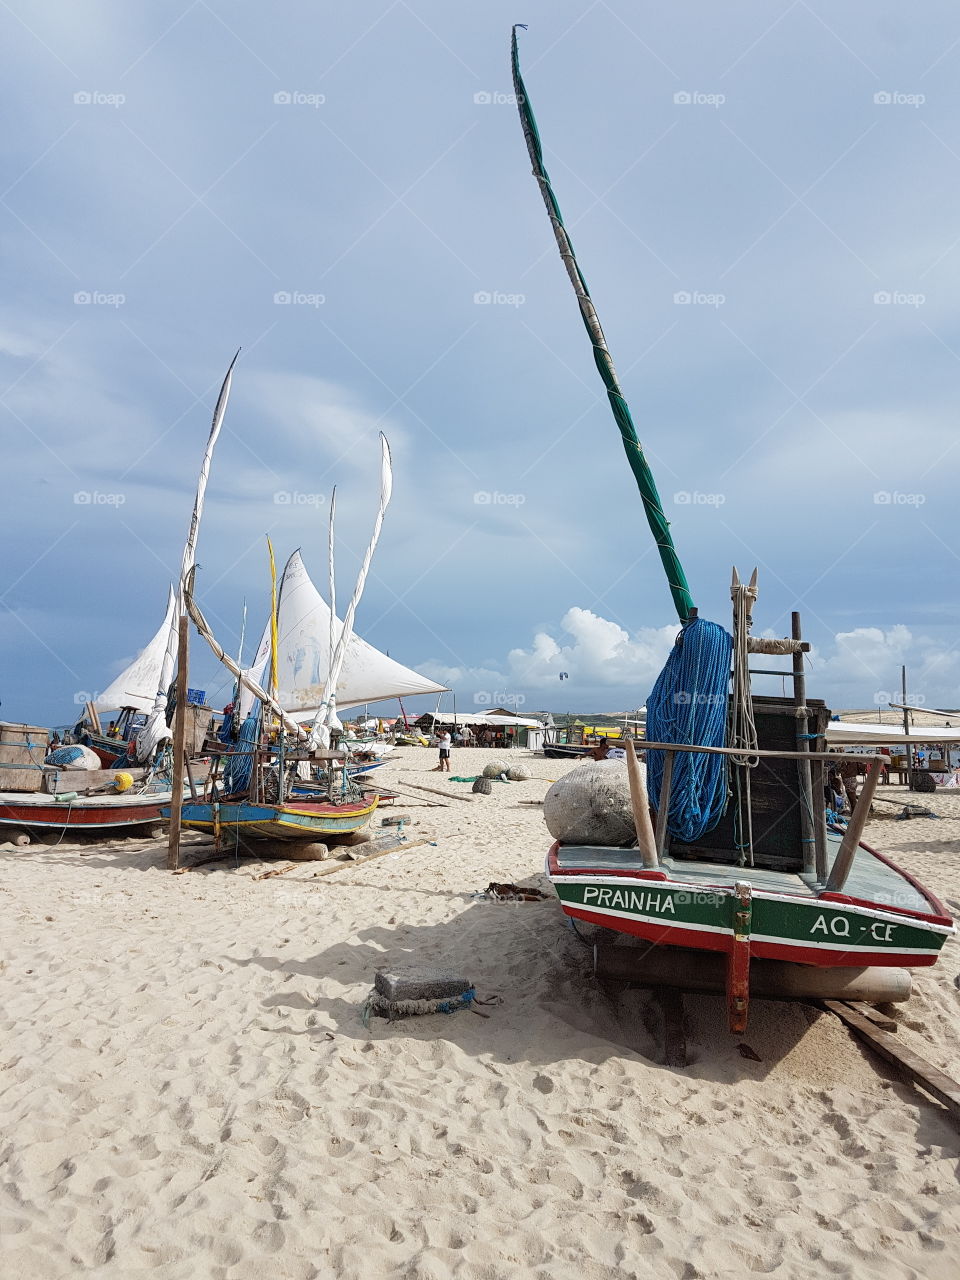 Barcos de pescas dos moradores locais da Prainha-AC. Fonte de renda local. Os moradores vivem da pesca.